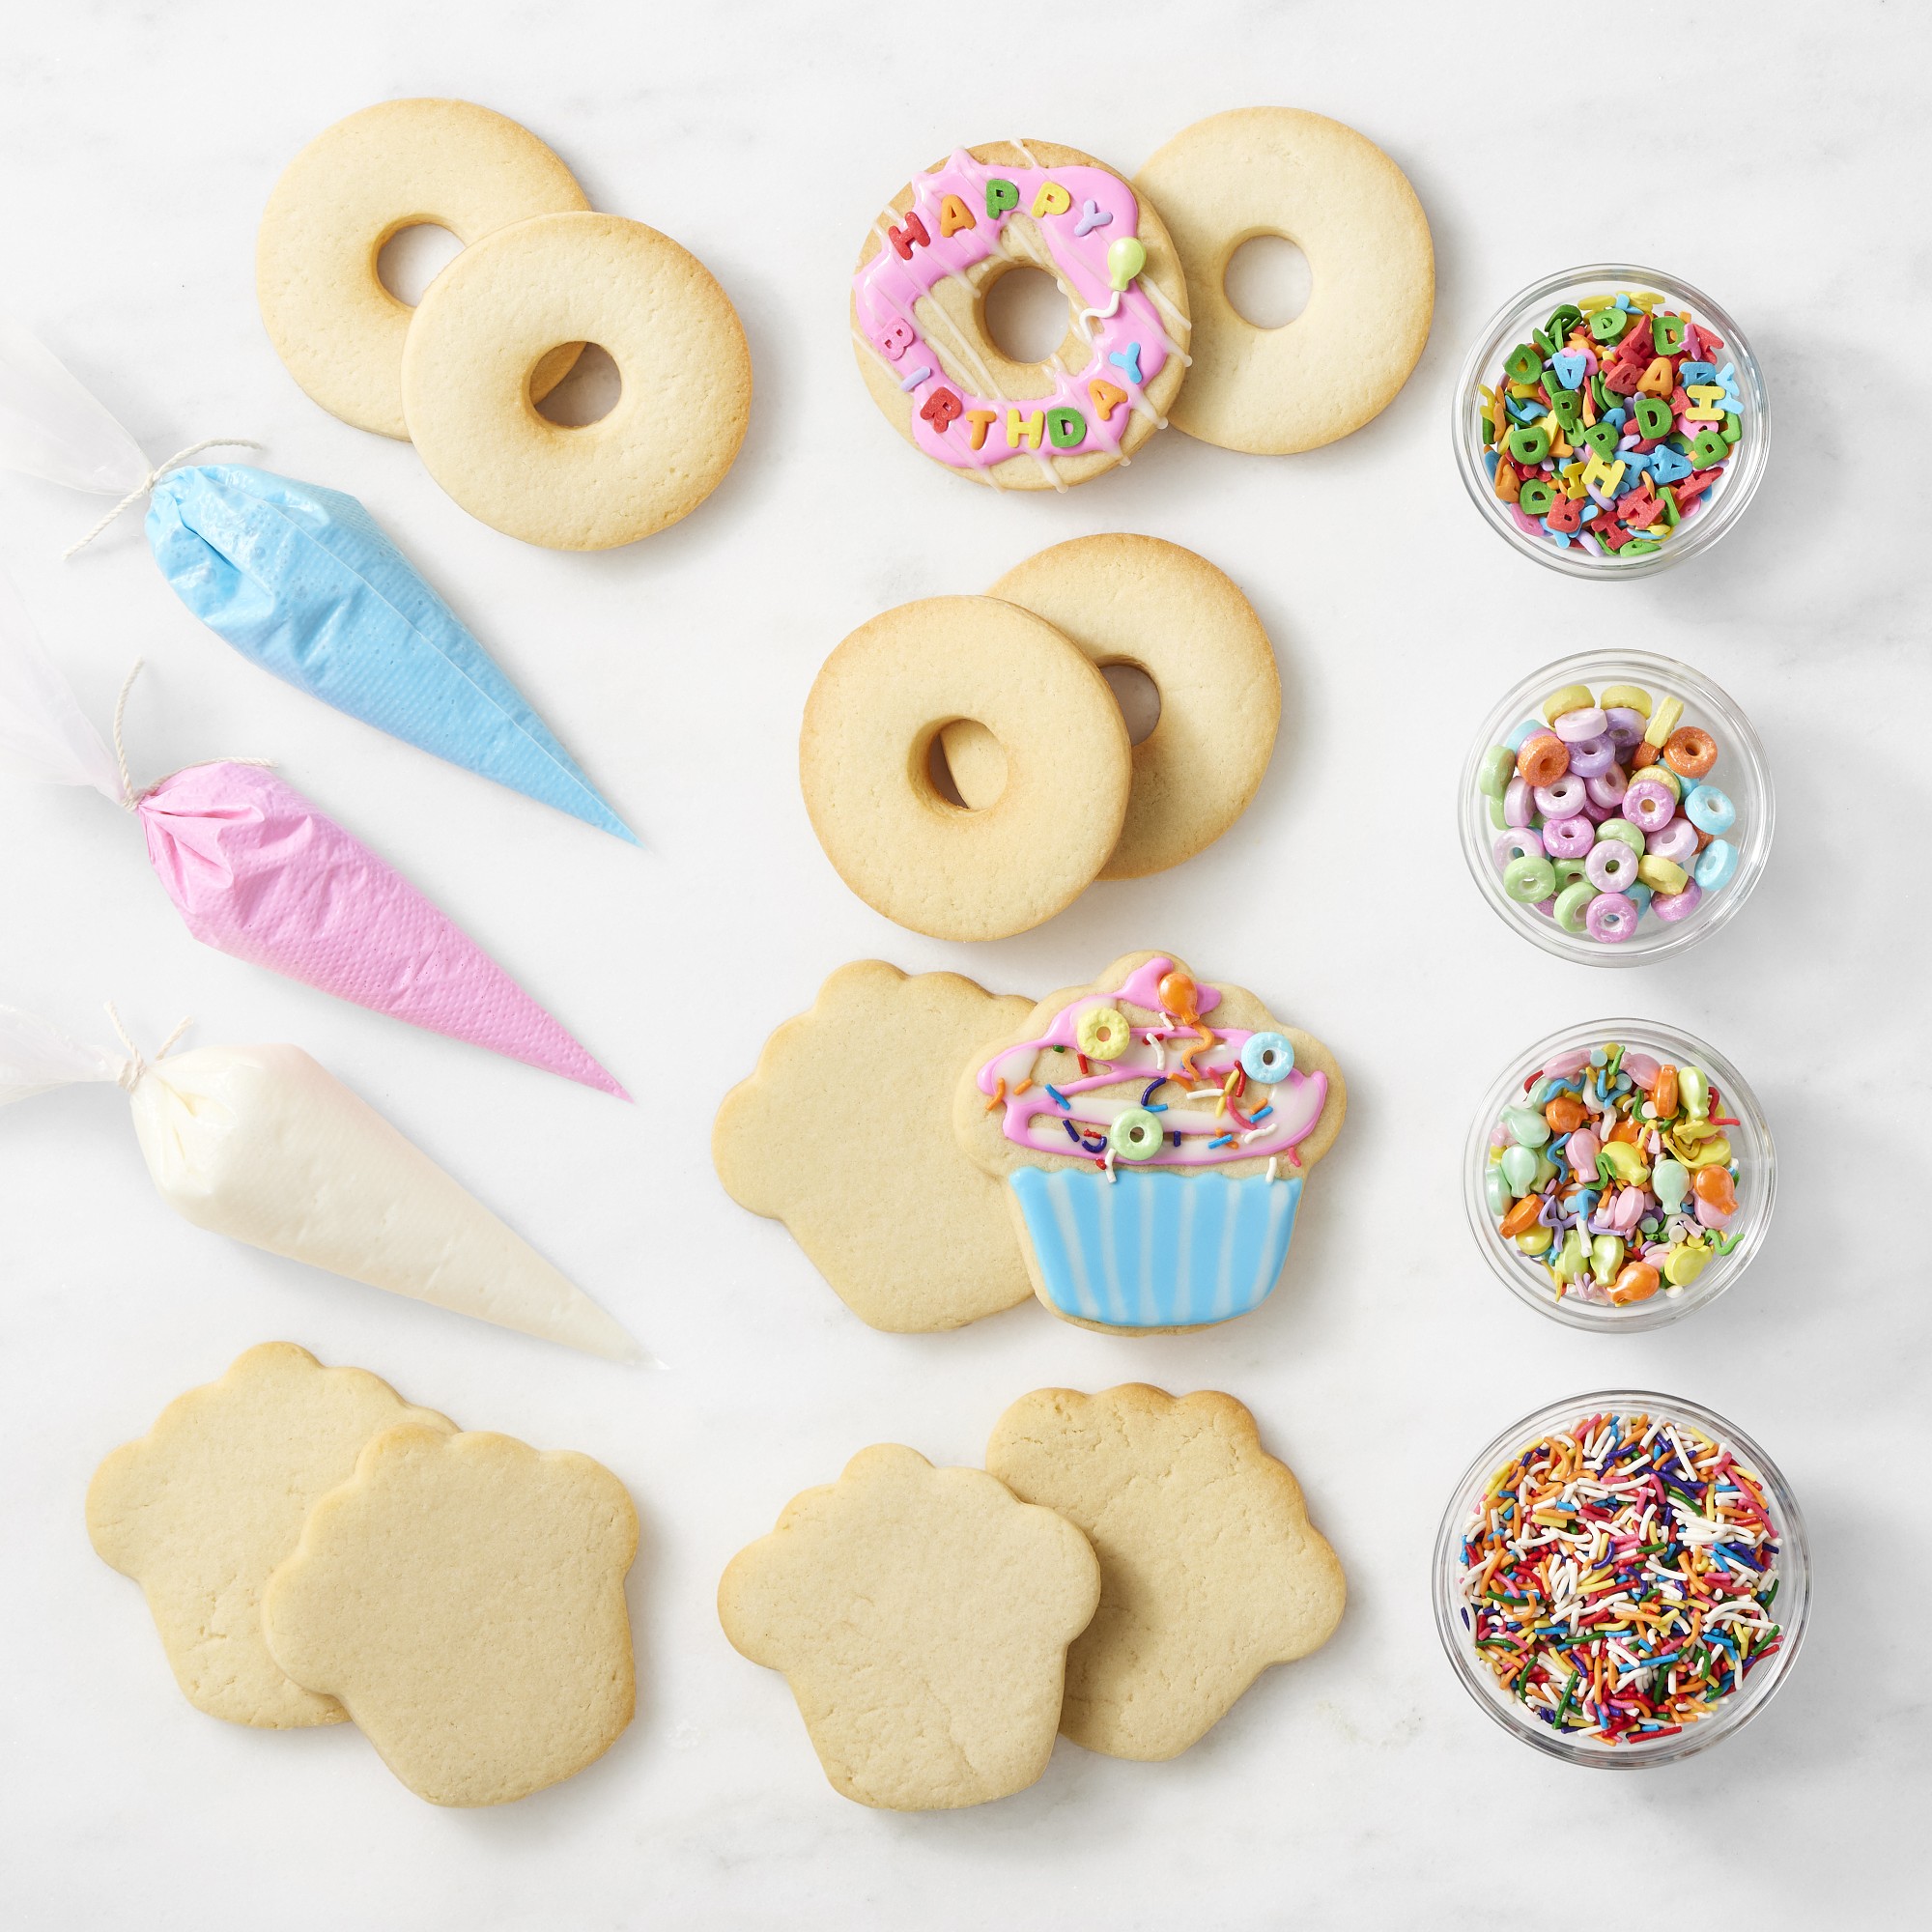 Happy Birthday Cookie Decorating Kit